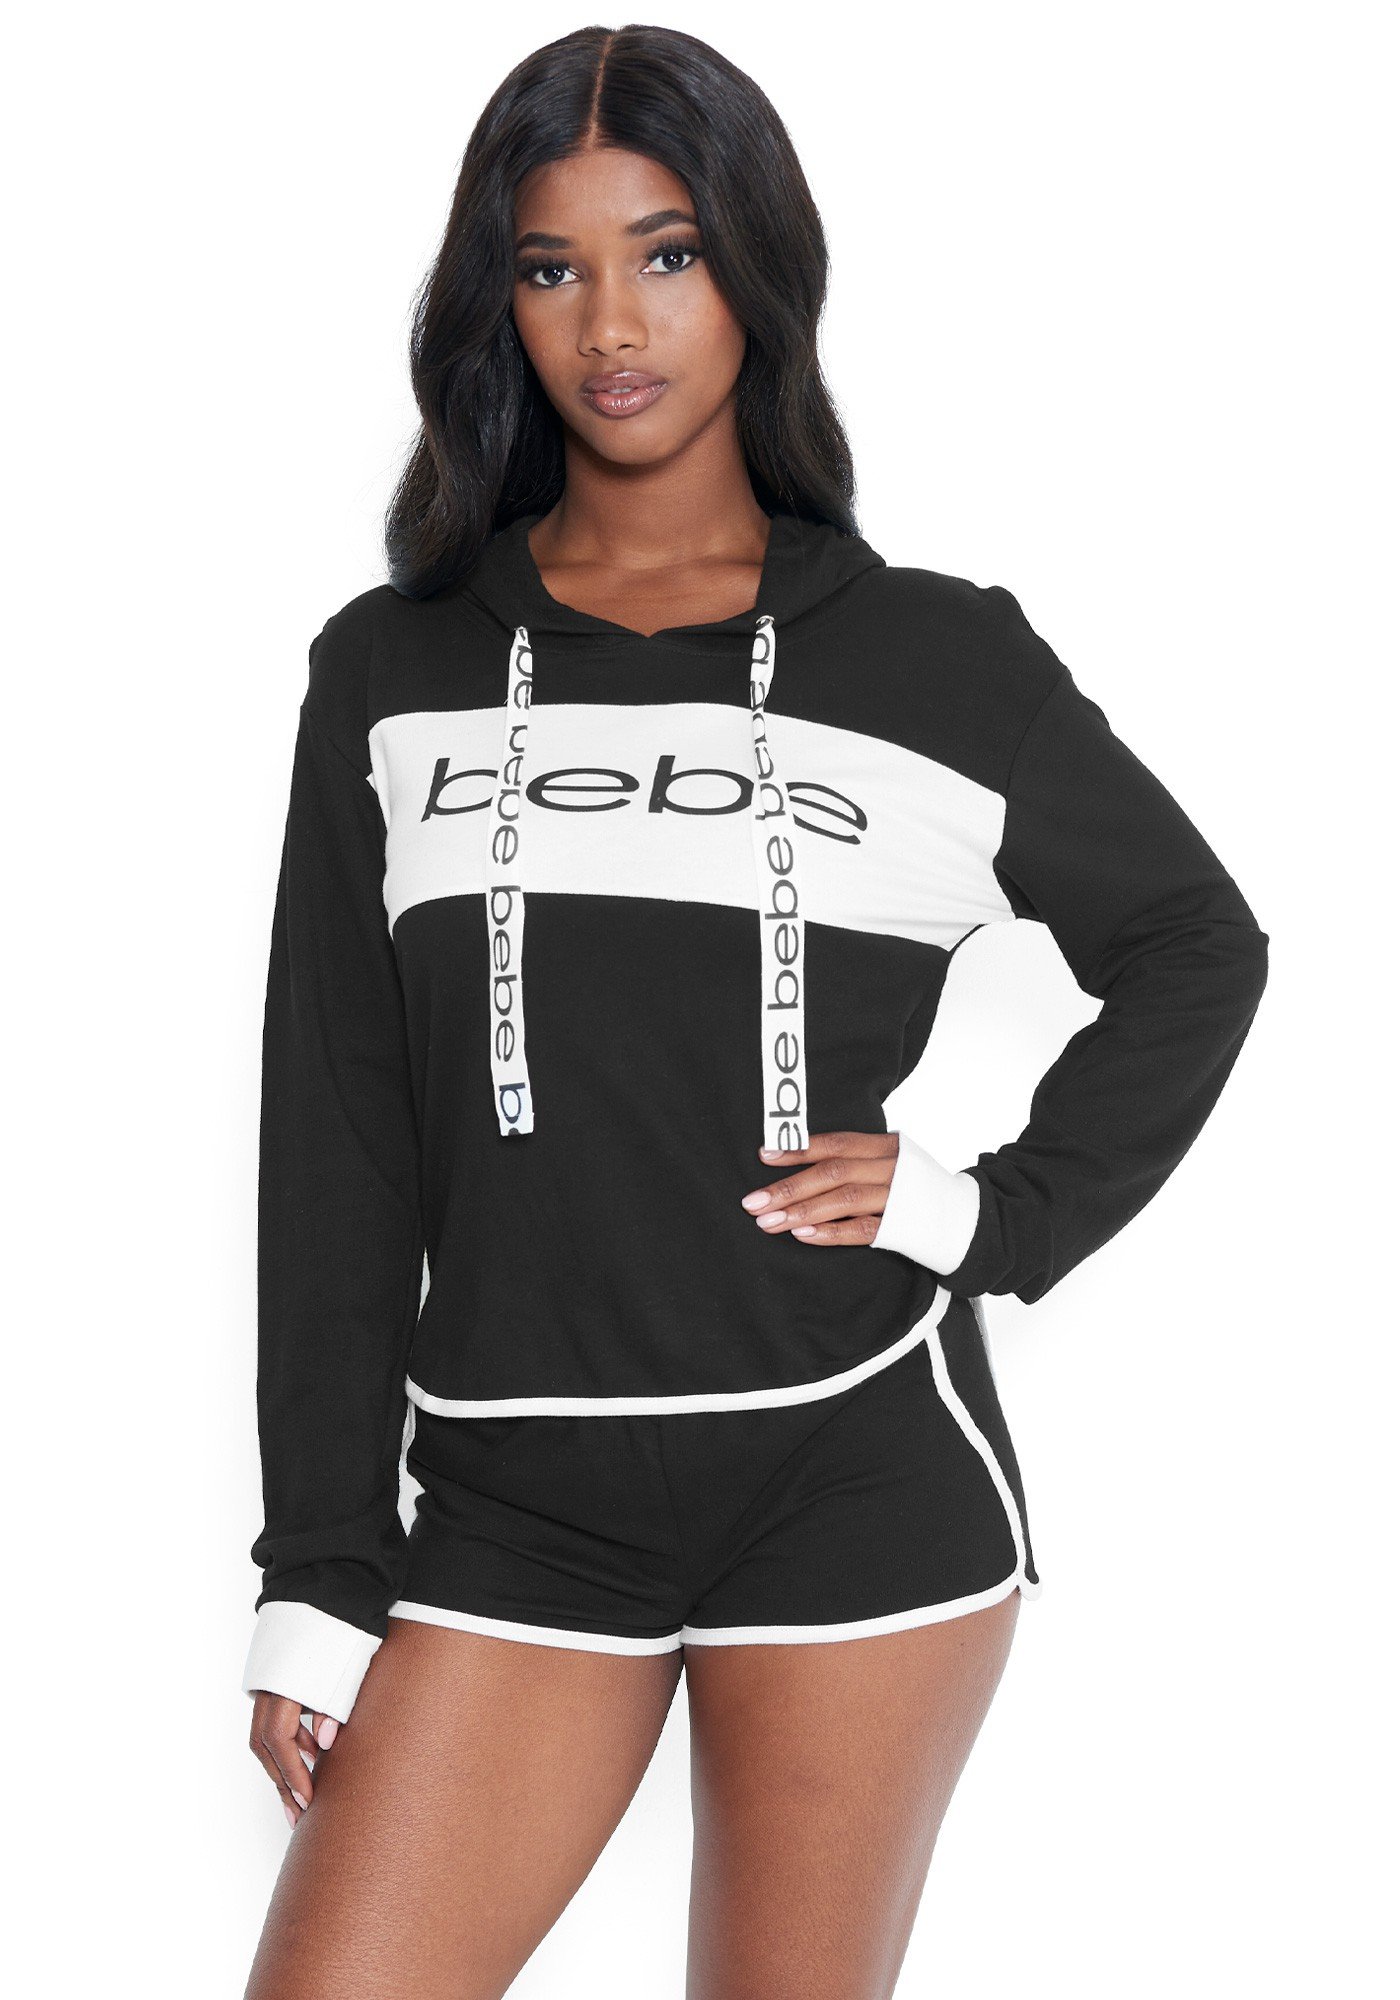 Bebe Women's Logo Sleepwear Shorts Set, Size Small in Black